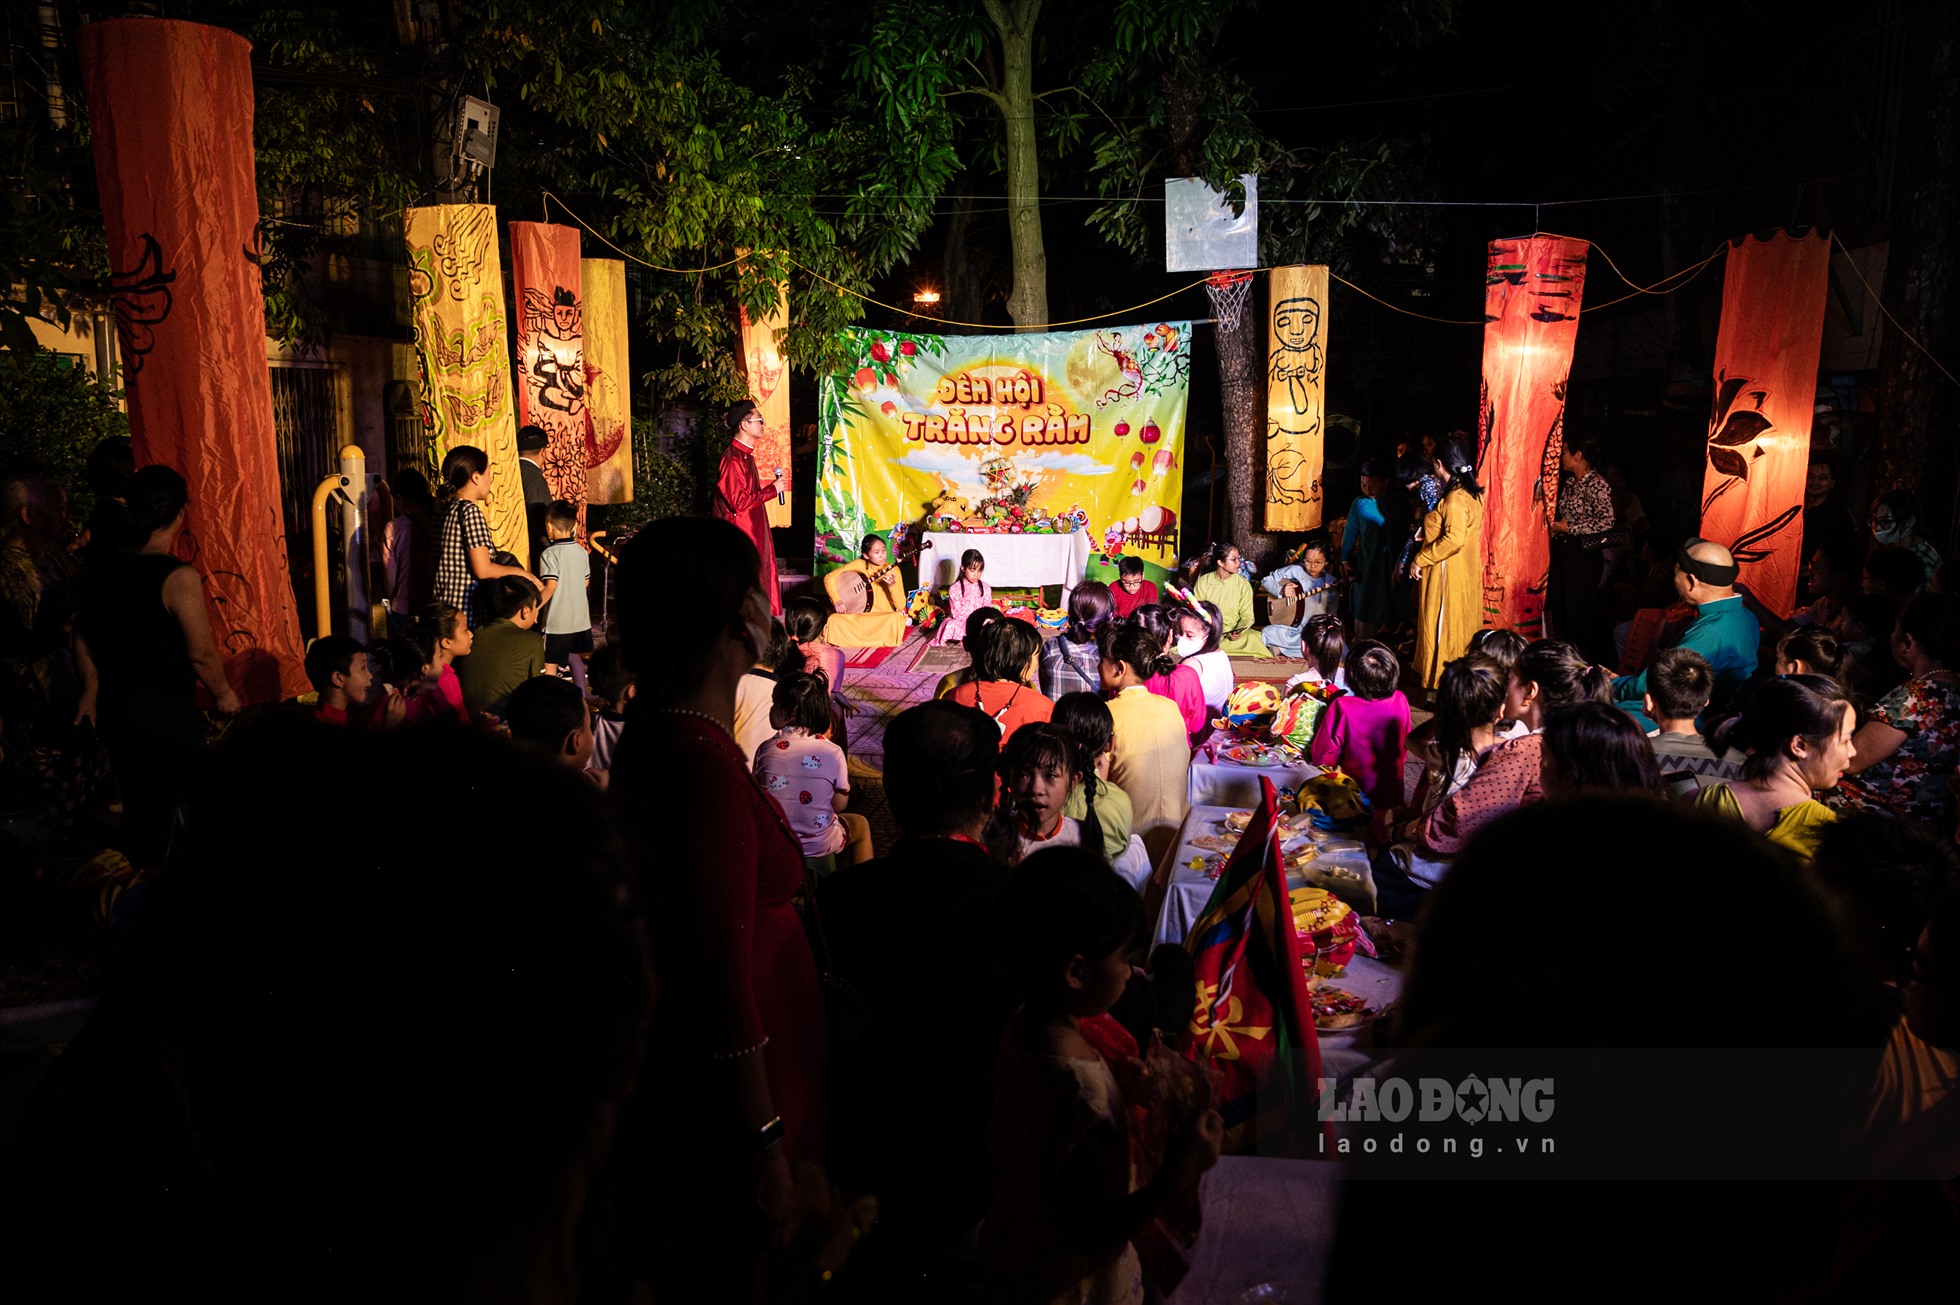 Nhằm lan tỏa các giá trị truyền thống tới cộng đồng, chương trình “Rước trăng chơi phố” đã được CLB Đình Làng việt phối hợp tổ chức cho các em nhỏ tối 9.8 tại khu tập thể Trung Tự (Đống Đa, Hà Nội).